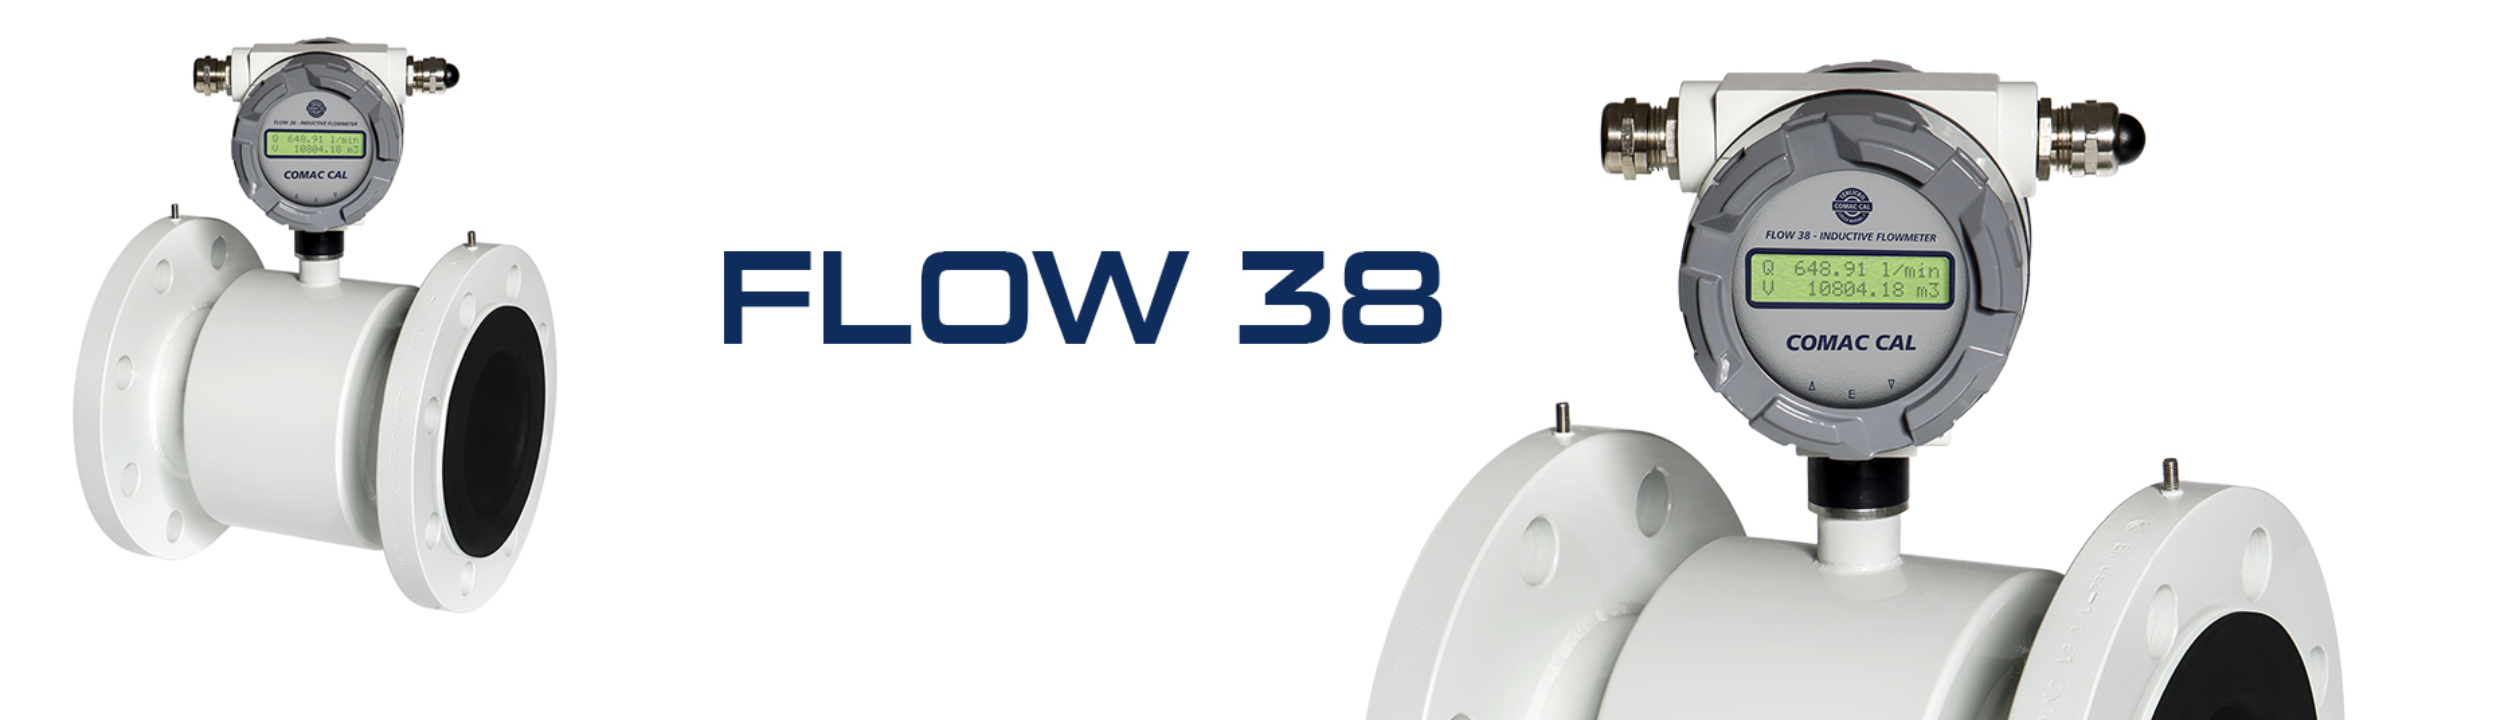 Đồng hồ đo lưu lượng nước Flow 38 Comac Cal